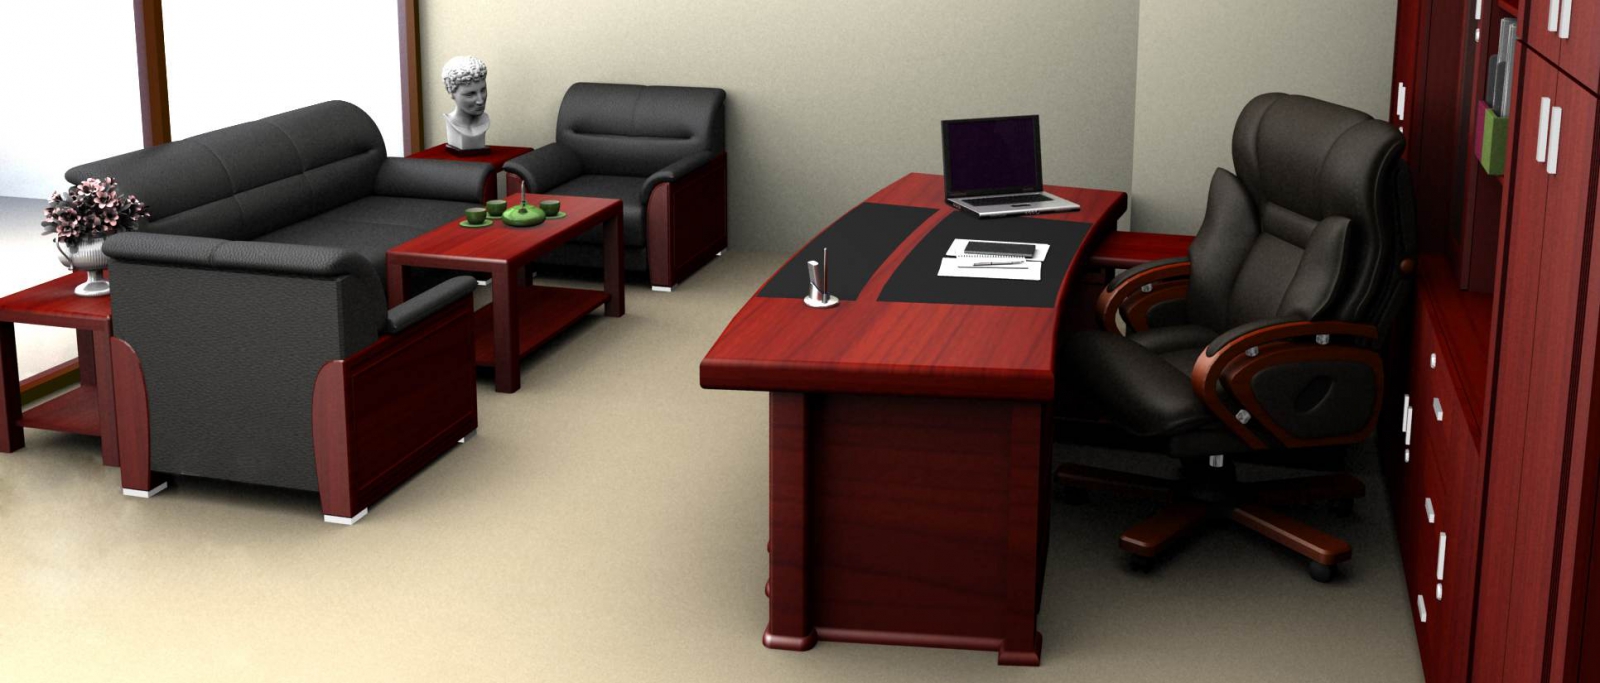 Cách lựa chọn bàn ghế văn phòng dành cho giám đốc phù hợp